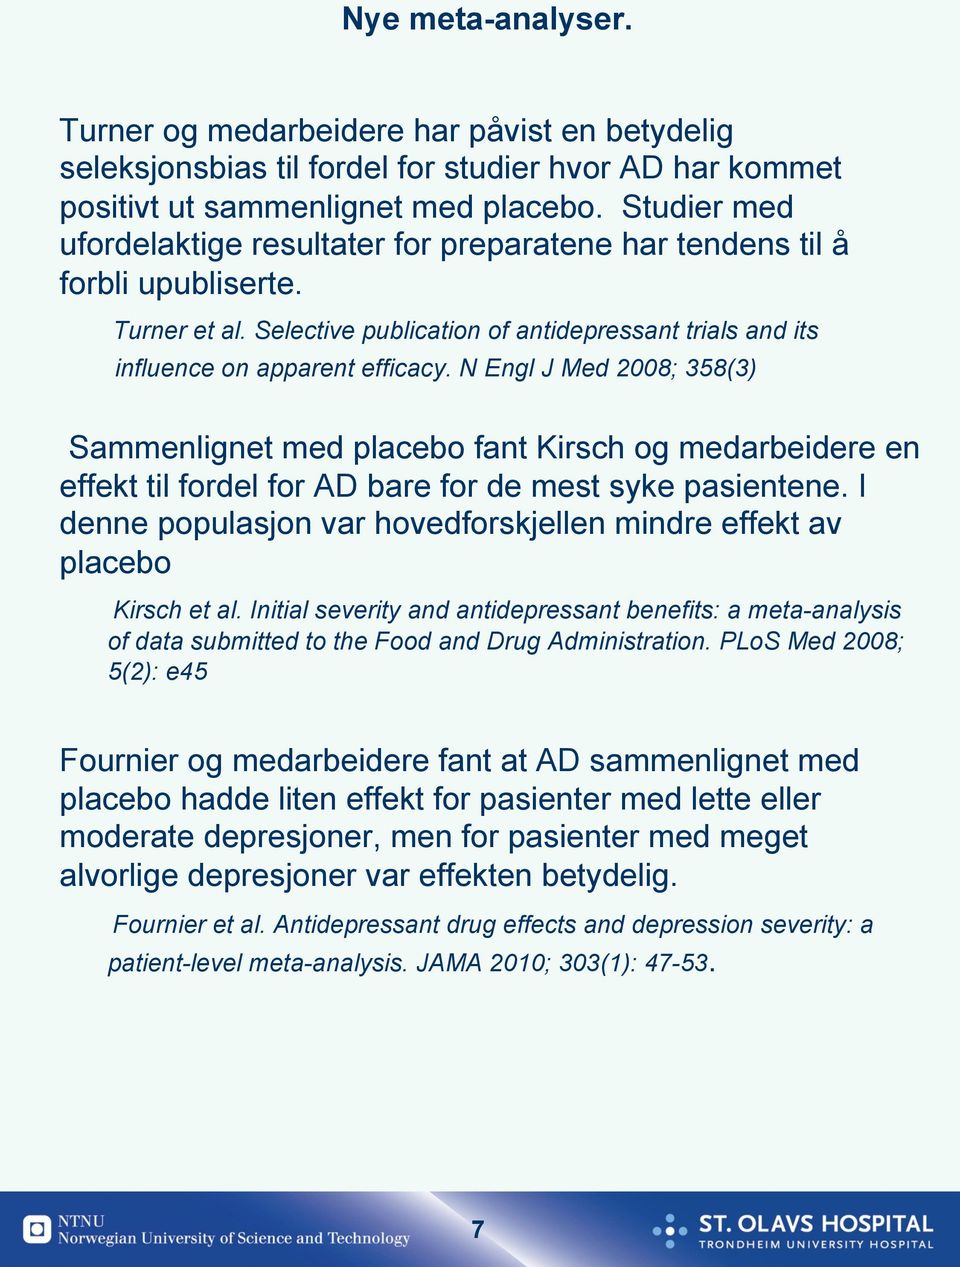 N Engl J Med 2008; 358(3) Sammenlignet med placebo fant Kirsch og medarbeidere en effekt til fordel for AD bare for de mest syke pasientene.